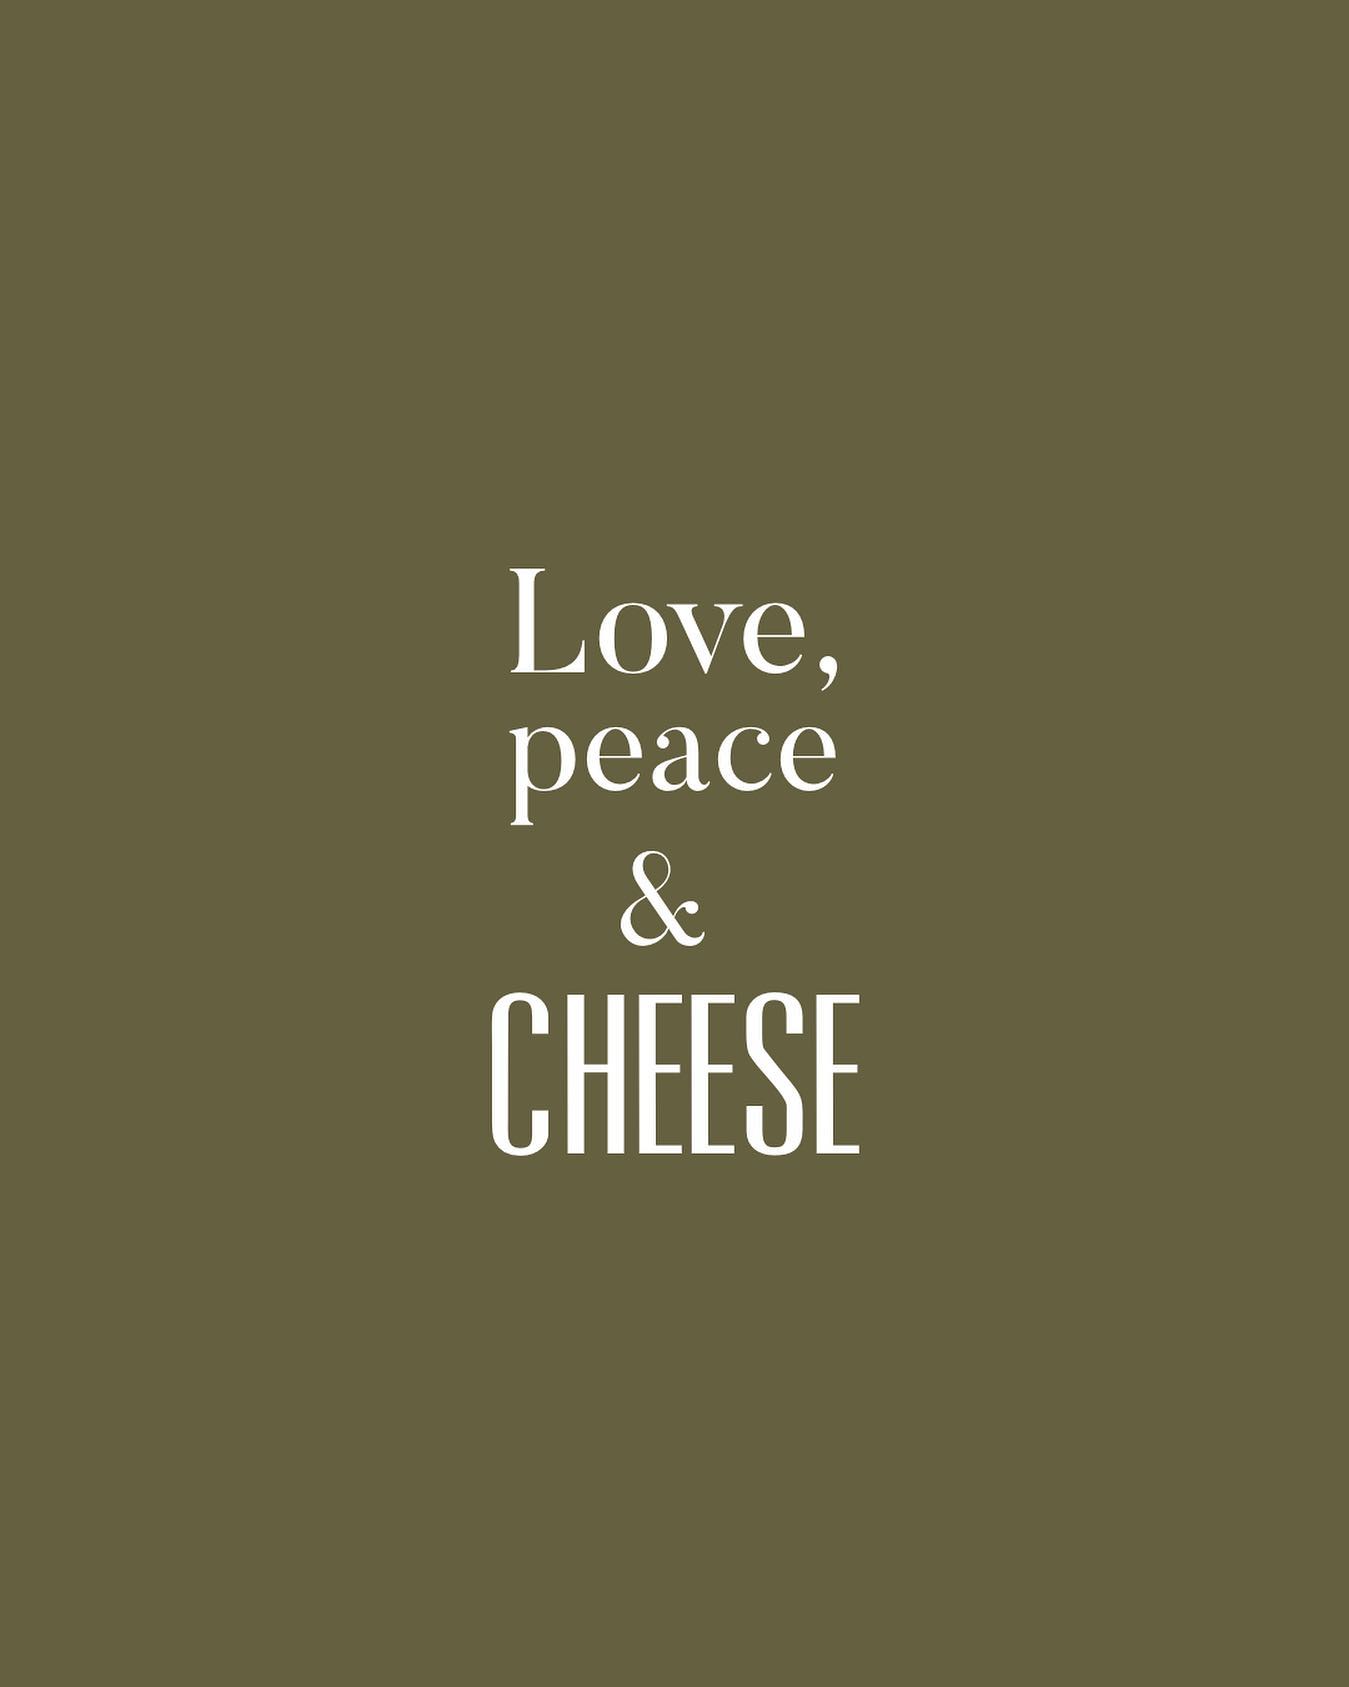 …AND NO COVID IF I MAY ADD…!

🇩🇰 Med ‘love, cheese and peace’ kommer vi langt… og kunne vi så få bugt med coronaspøgelset, så ville det jo være endnu bedre. 

Pas på dig selv og hinanden!
♥️✌️🧀
.
.
.

#ostesnak #cheesetalks #cheese #cheeseislife #cheeselovers #instacheese #cheeseplease #ost #cheeseblogger #foodie #fromage #cheeseblog #citat #quote #cheesequote #cheesequotes